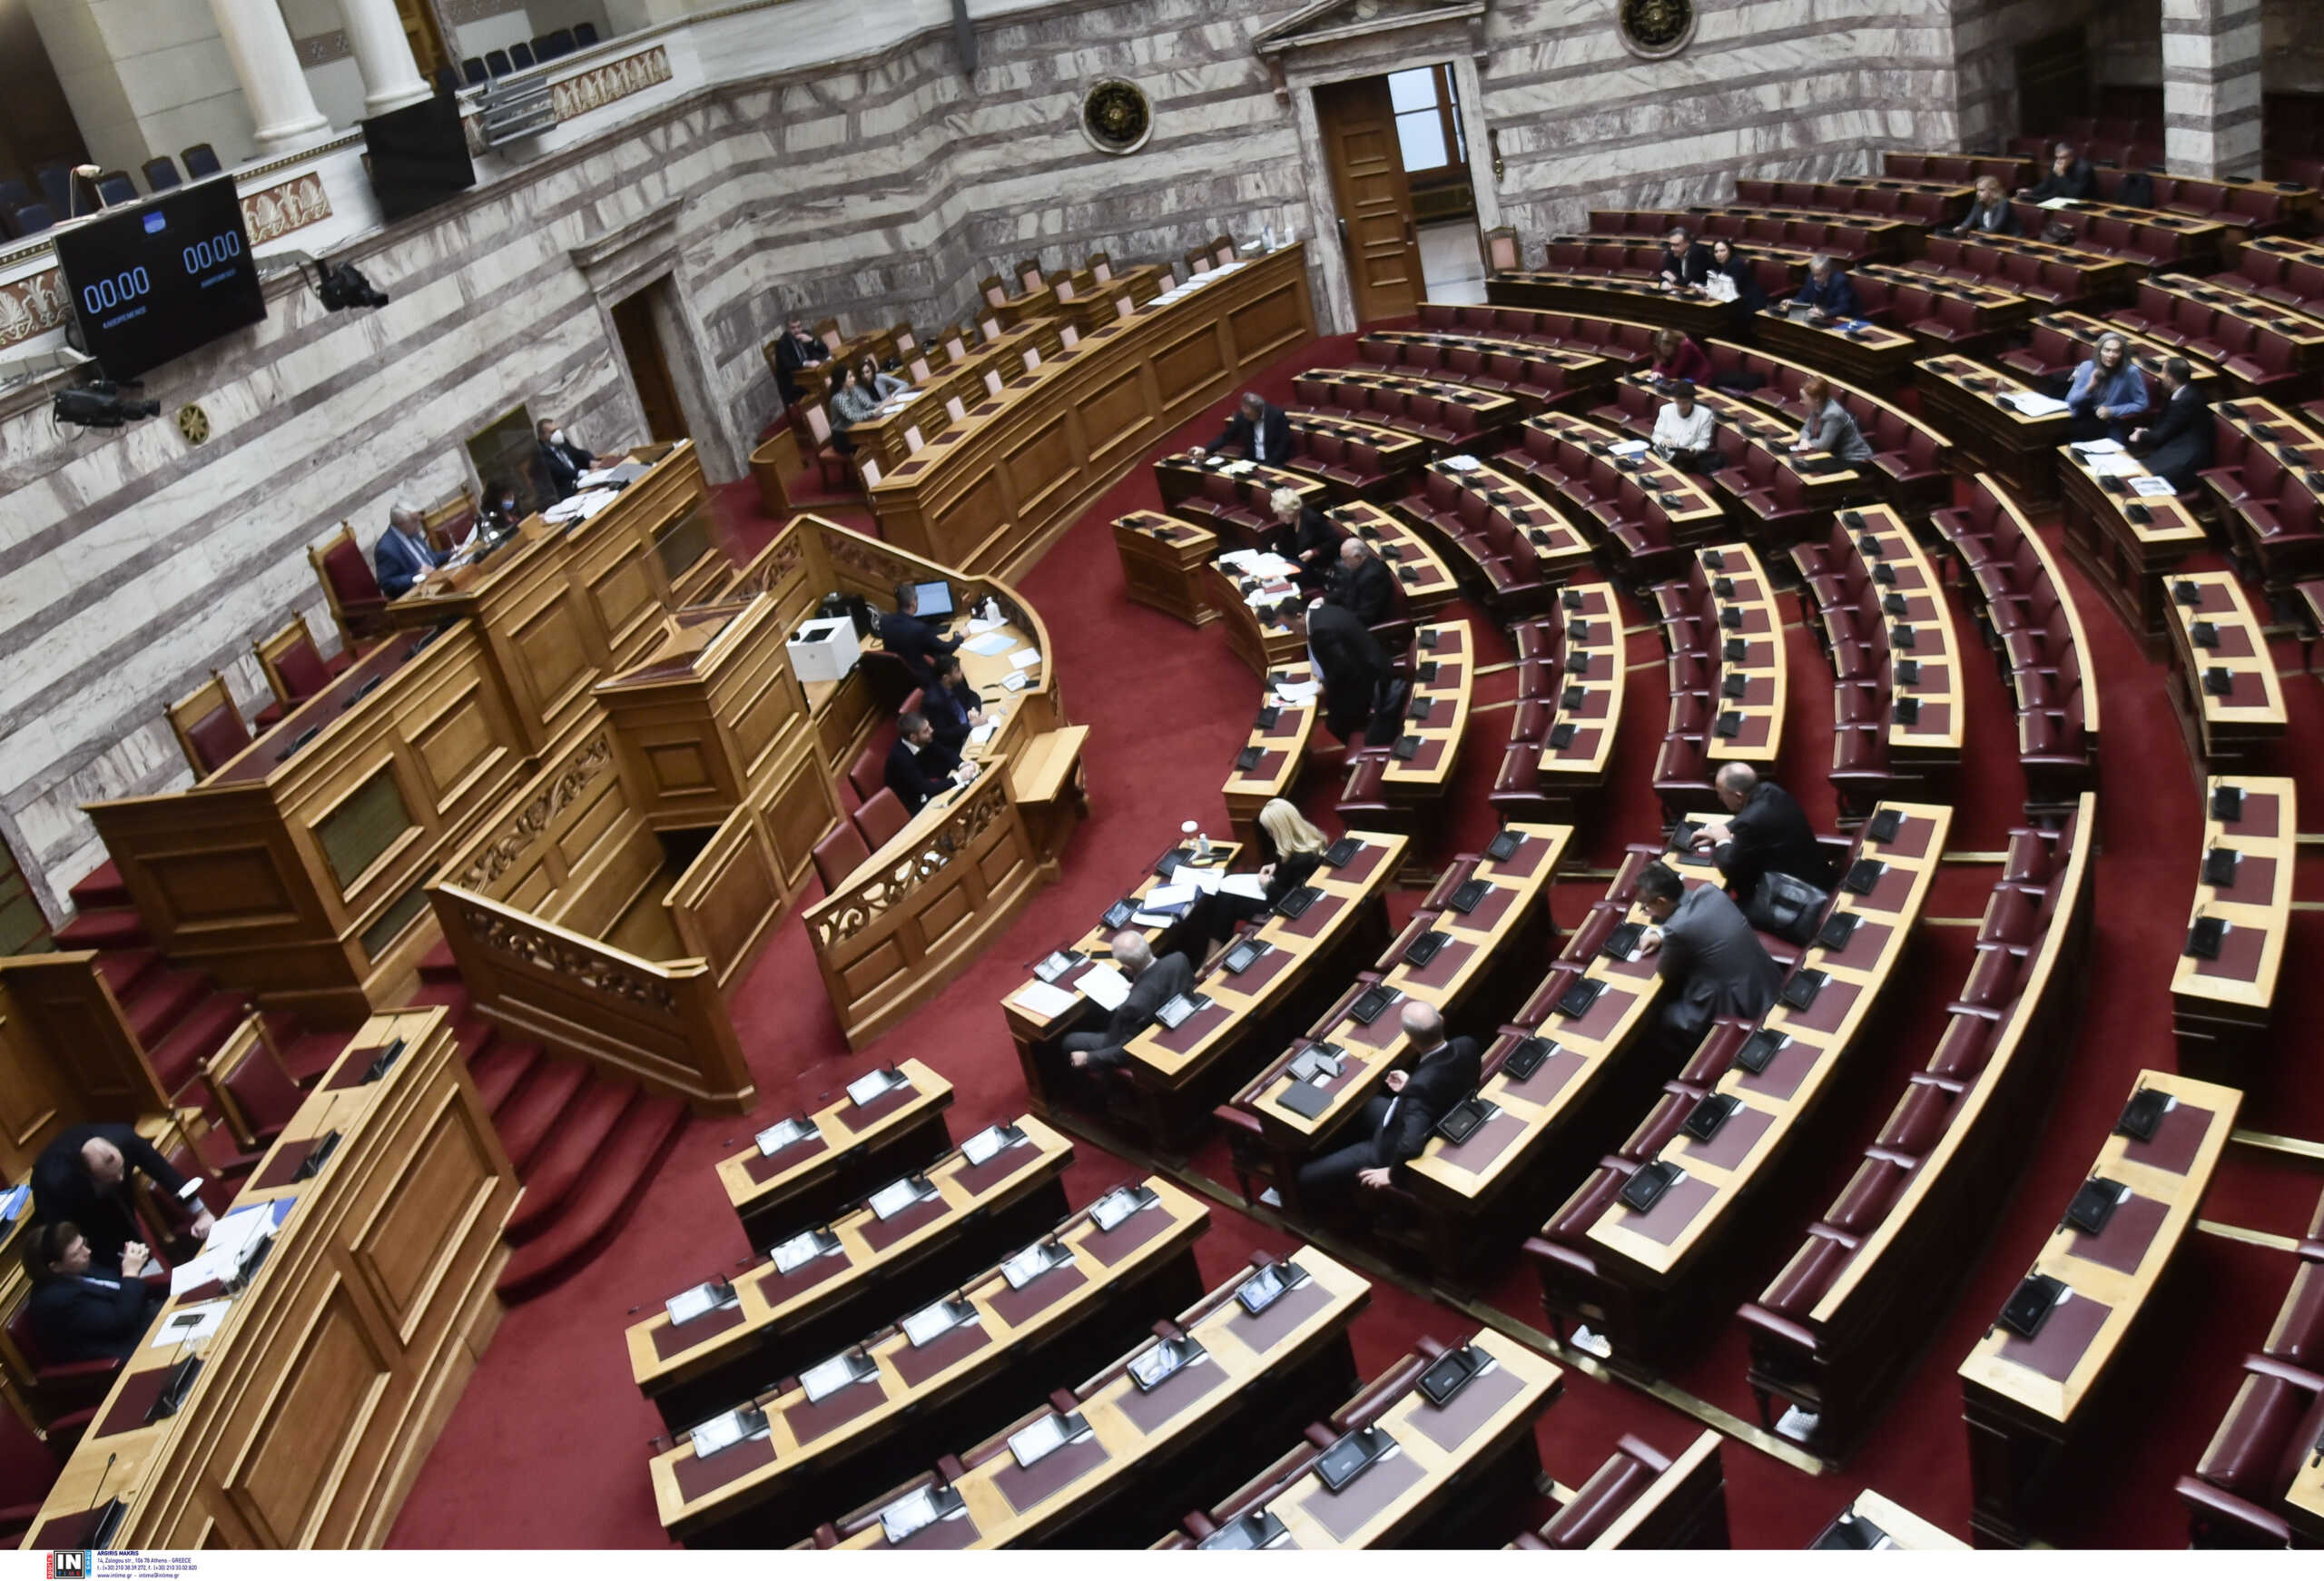 Νομοσχέδιο για το ΕΣΥ: Μετωπική κυβέρνησης – αντιπολίτευσης στη Βουλή με αφορμή την ψήφισή του